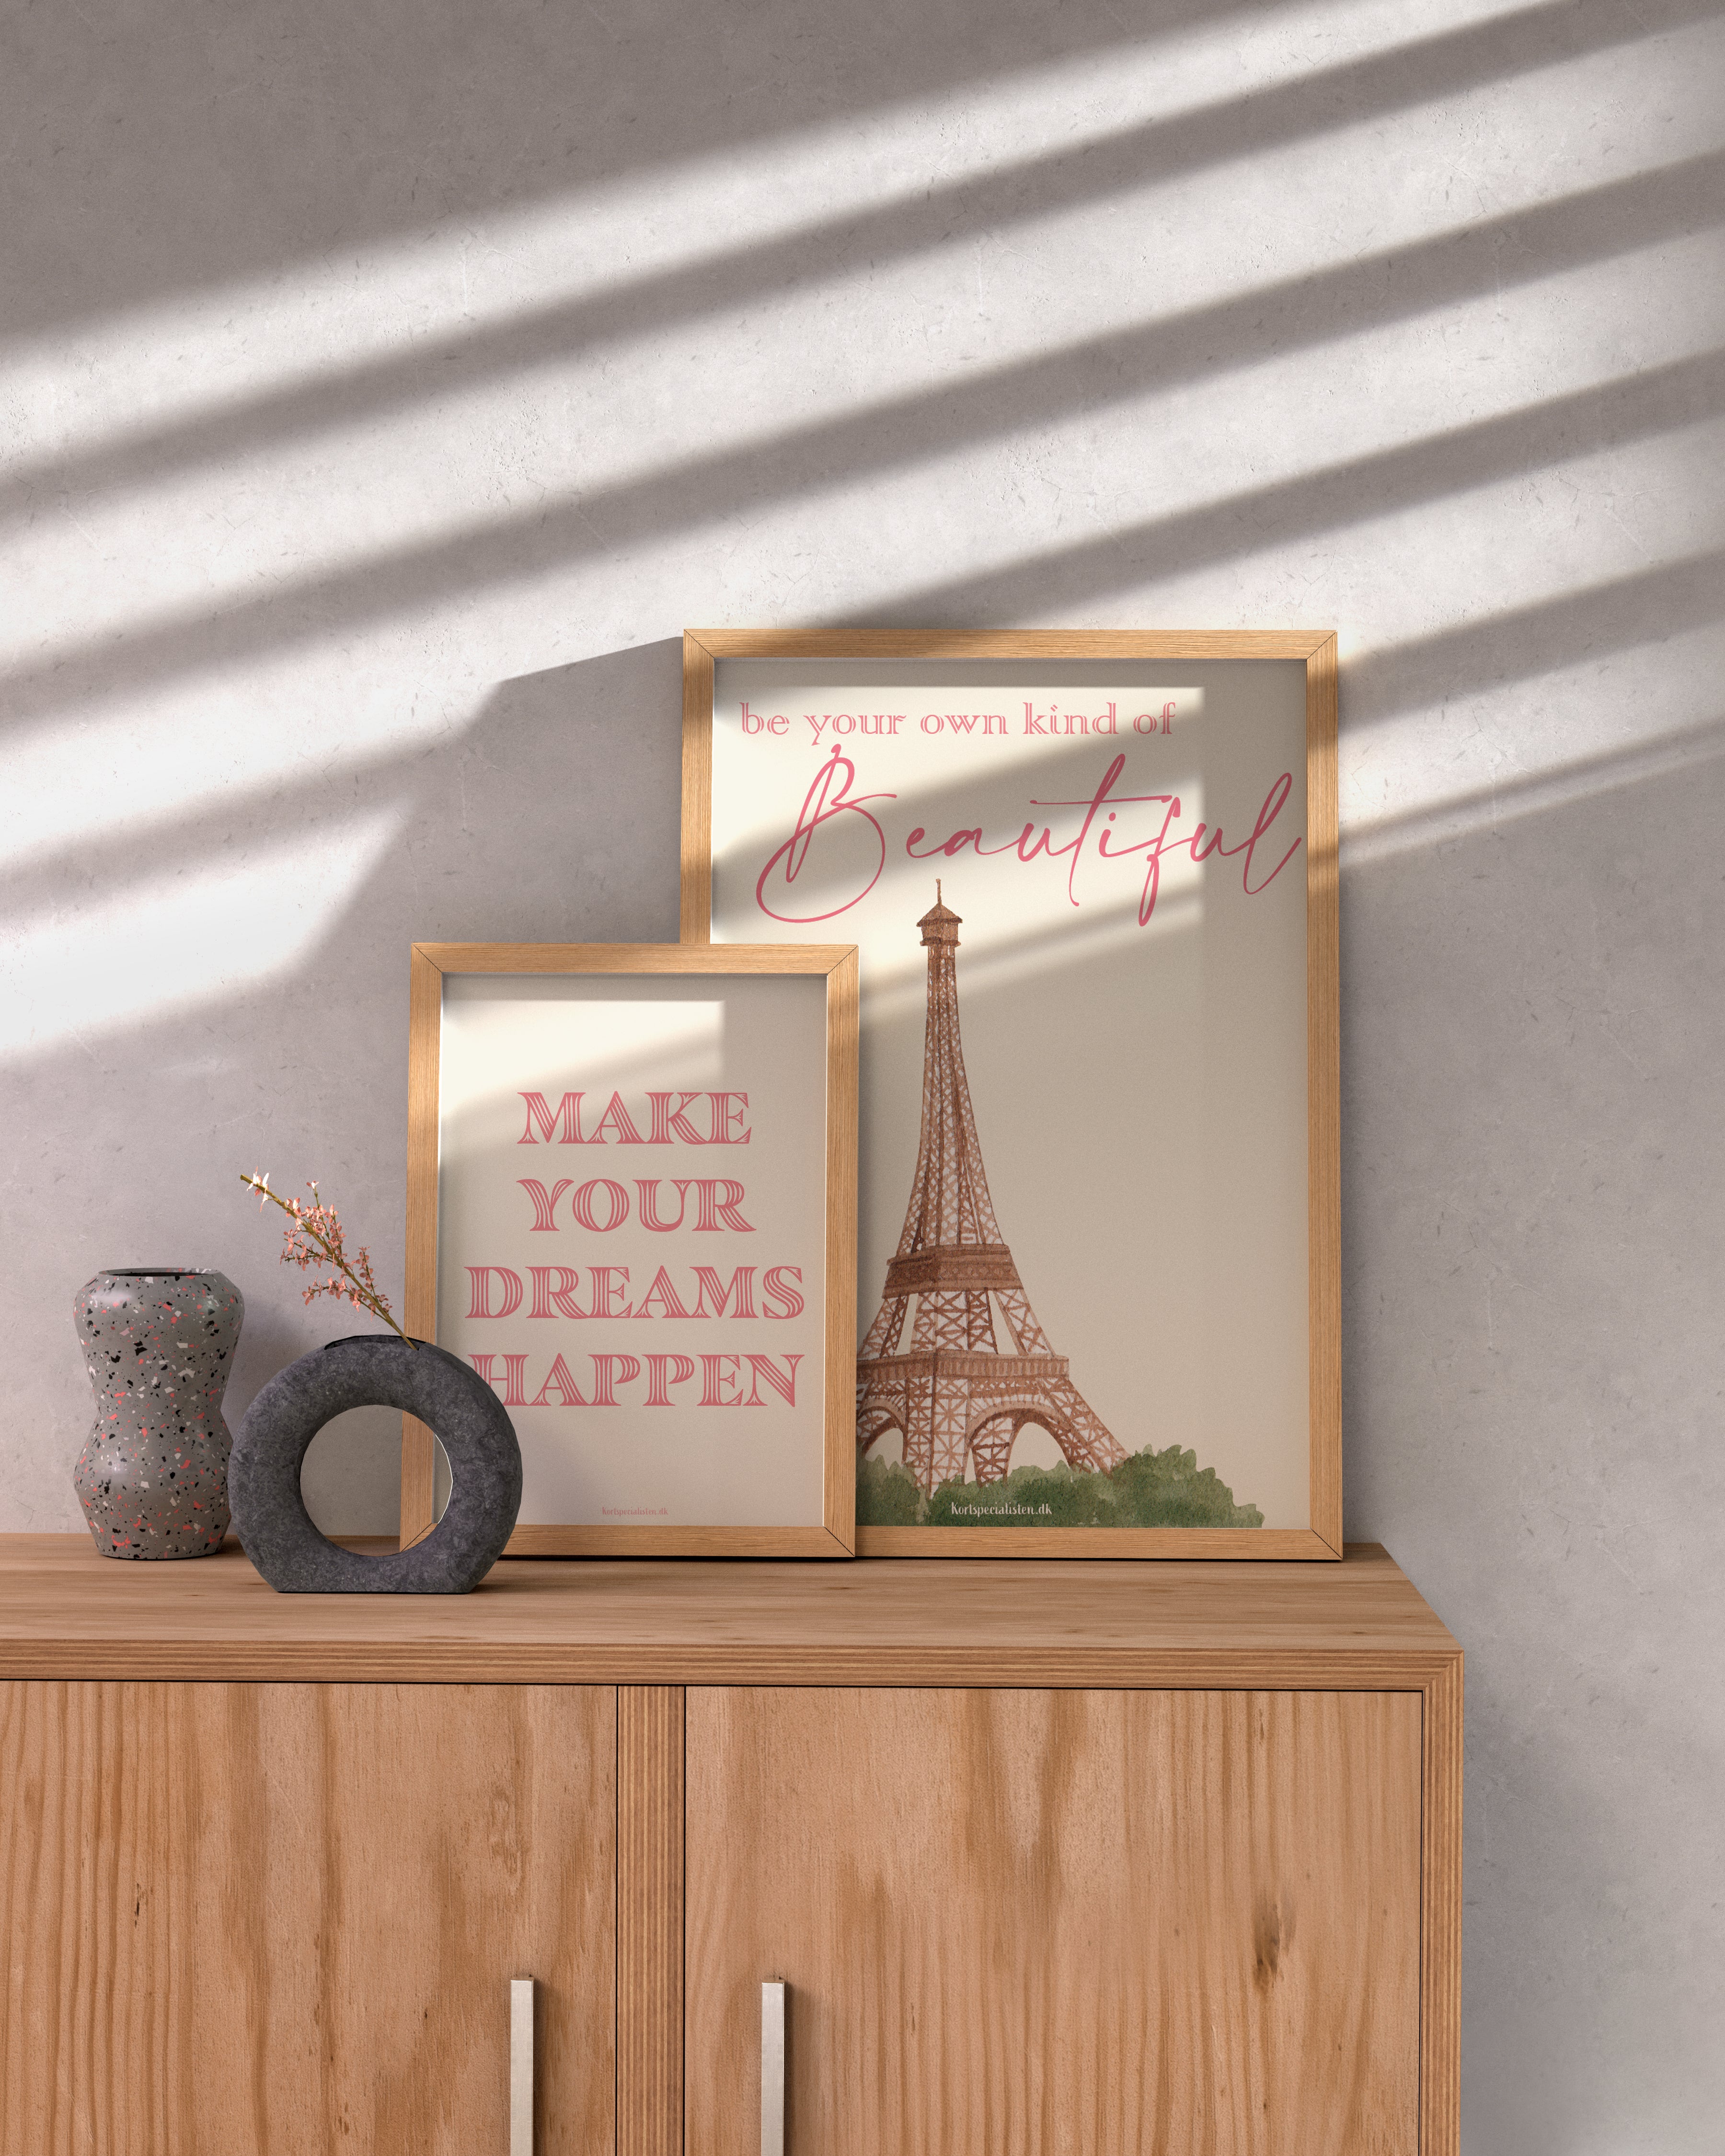 Make your dreams happen - Plakat